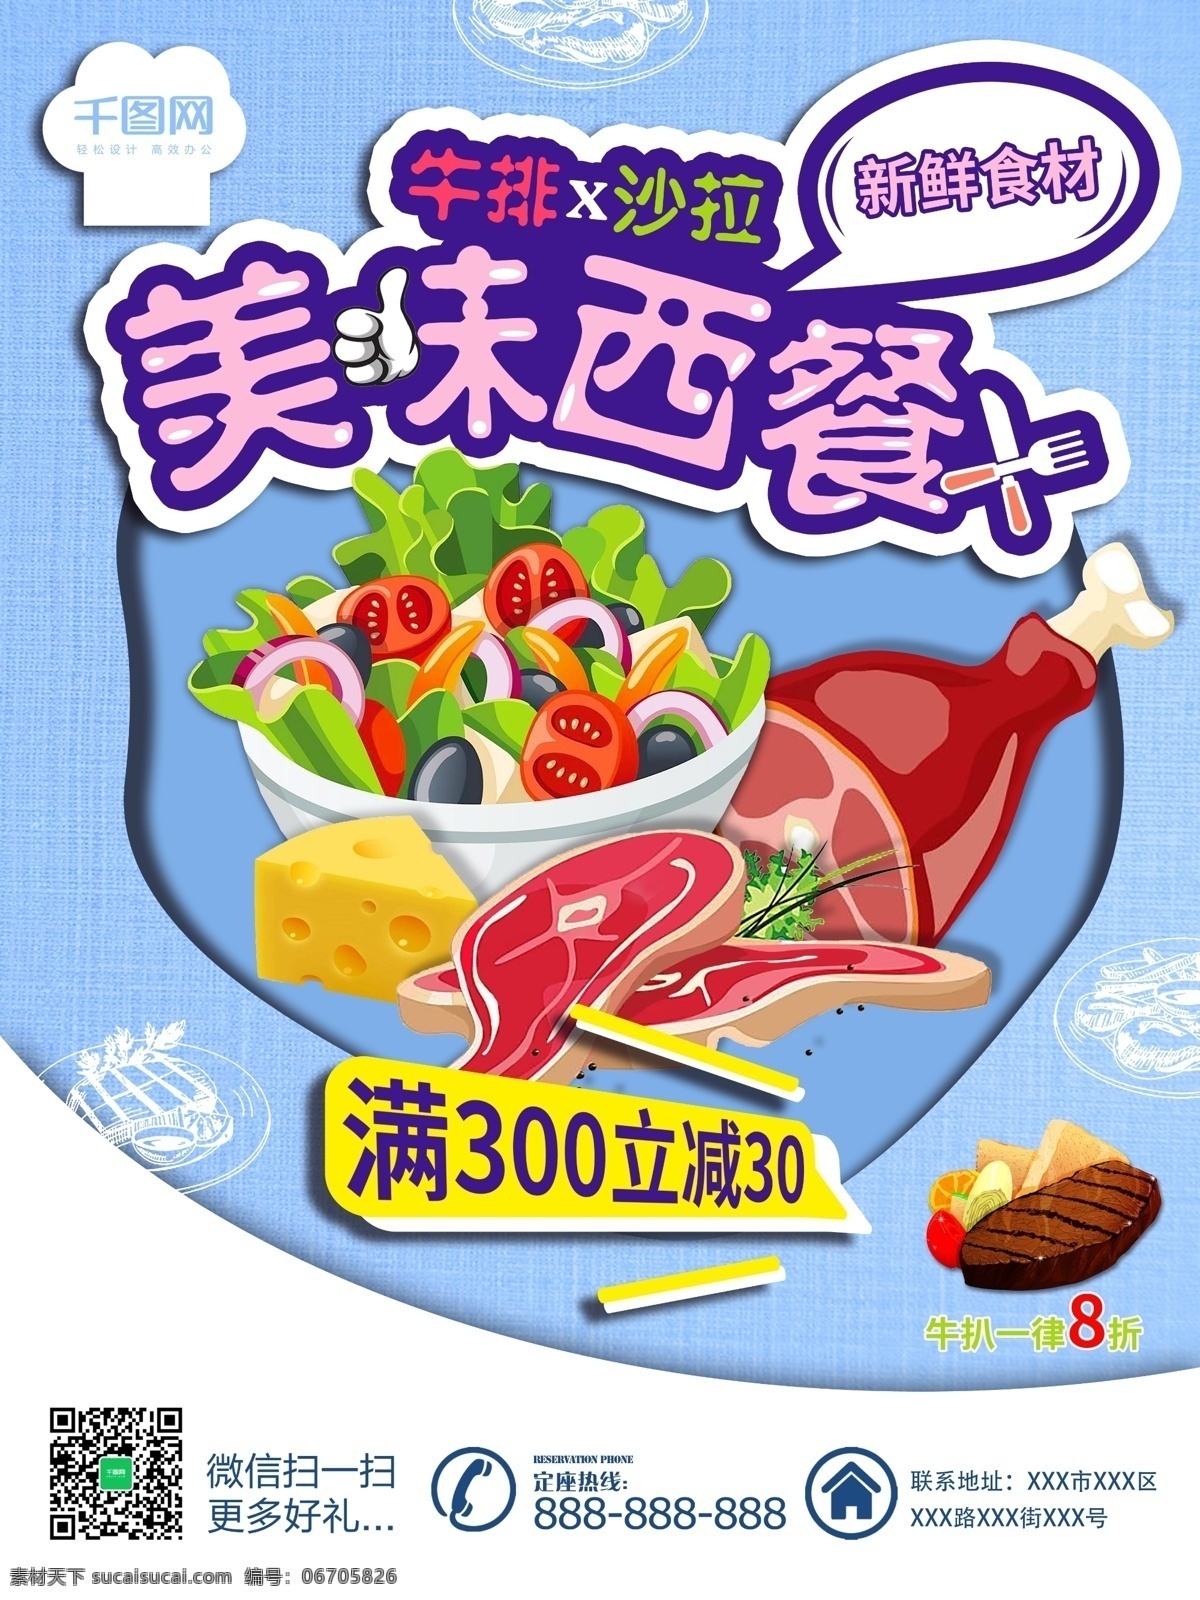 蓝色 小 清新 美味 西餐 美食 宣传单 海报 模版 牛排 蓝色背景 新鲜 刀叉 美味西餐 沙拉